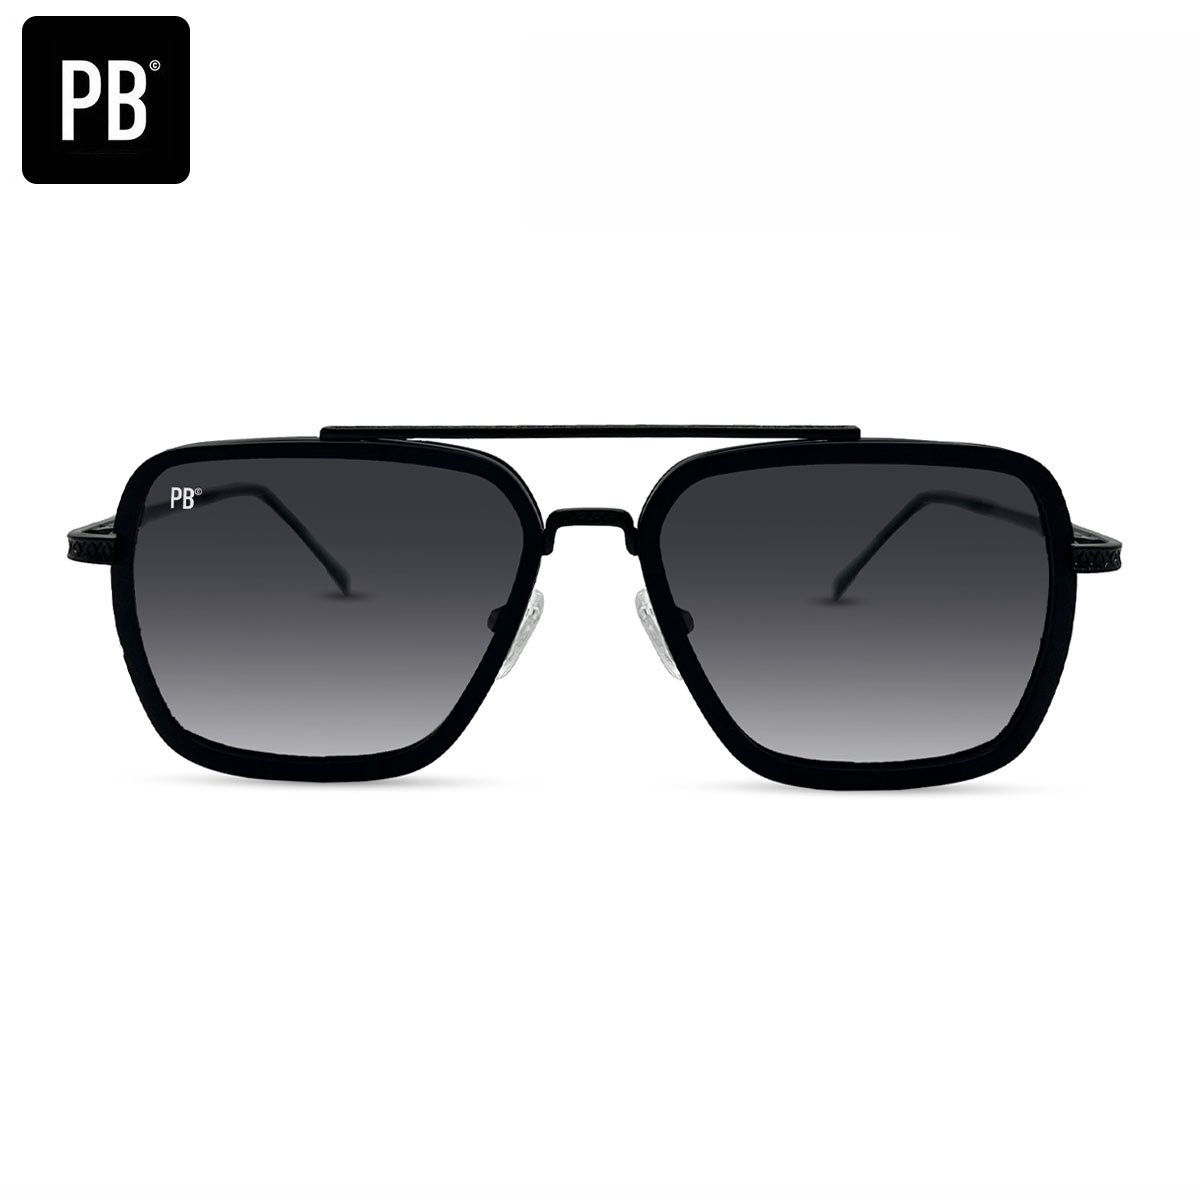 PB Sunglasses - Mason Black Gradient. - Zonnebril heren en dames - Gepolariseerd - Zwart design - Roestvrij staal - Stijlvolle neusbrug